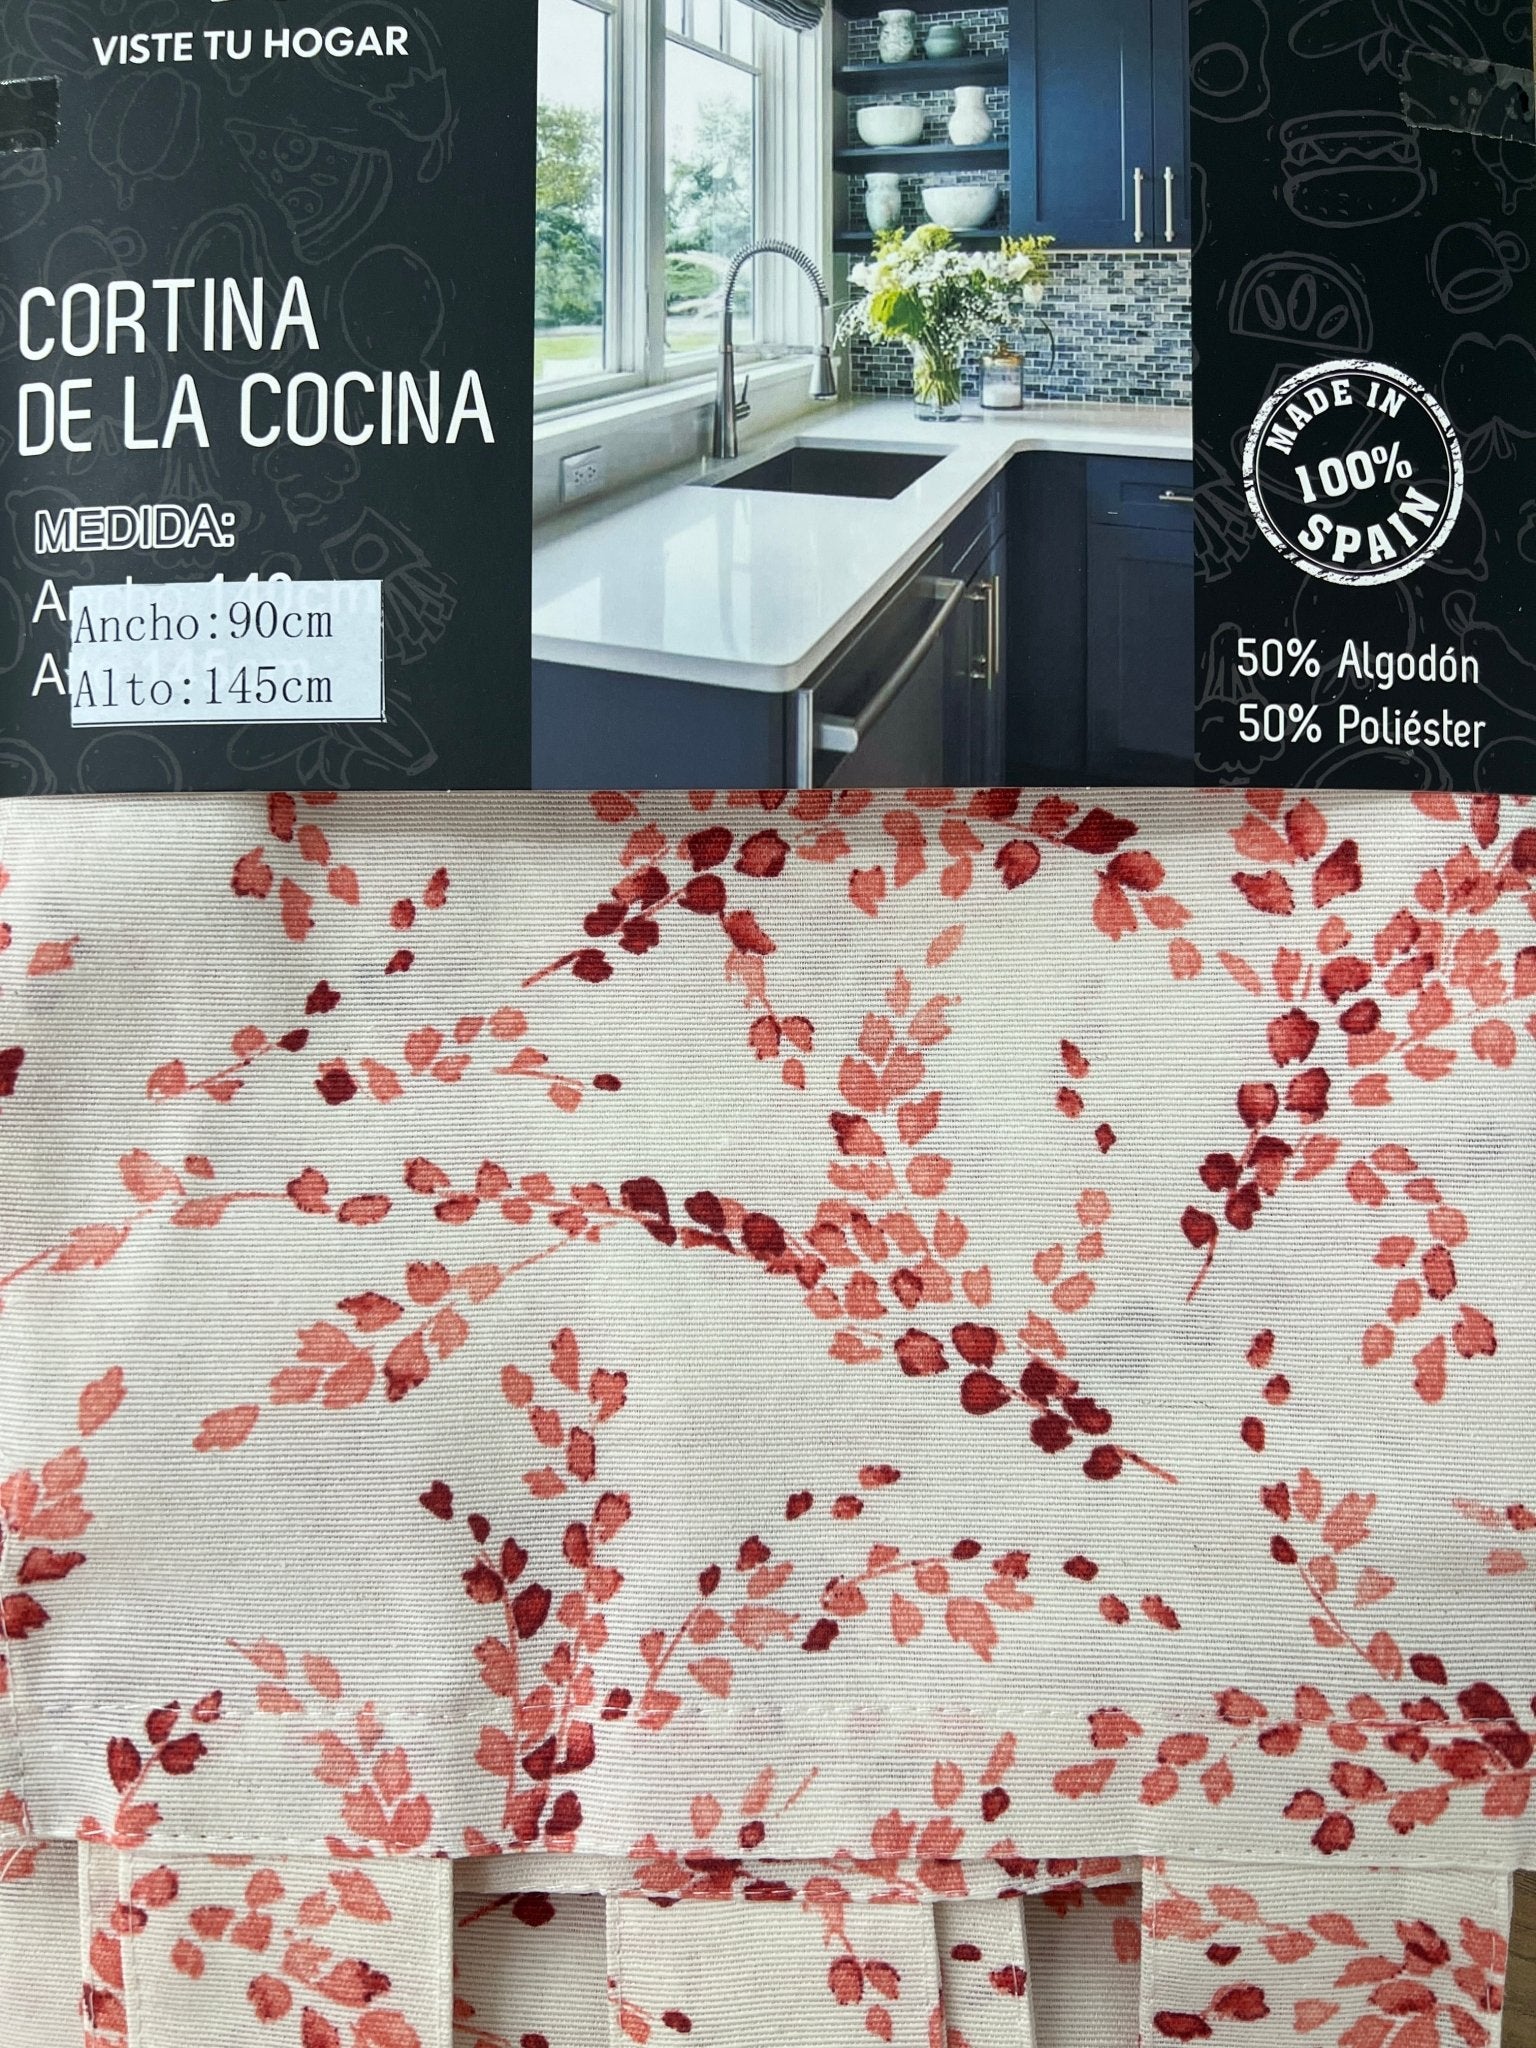 Cortina De Cocina Con Estampado Adenophora Poliéster Y Algodón 90x145cm - VISTE TU HOGAR ONLINE